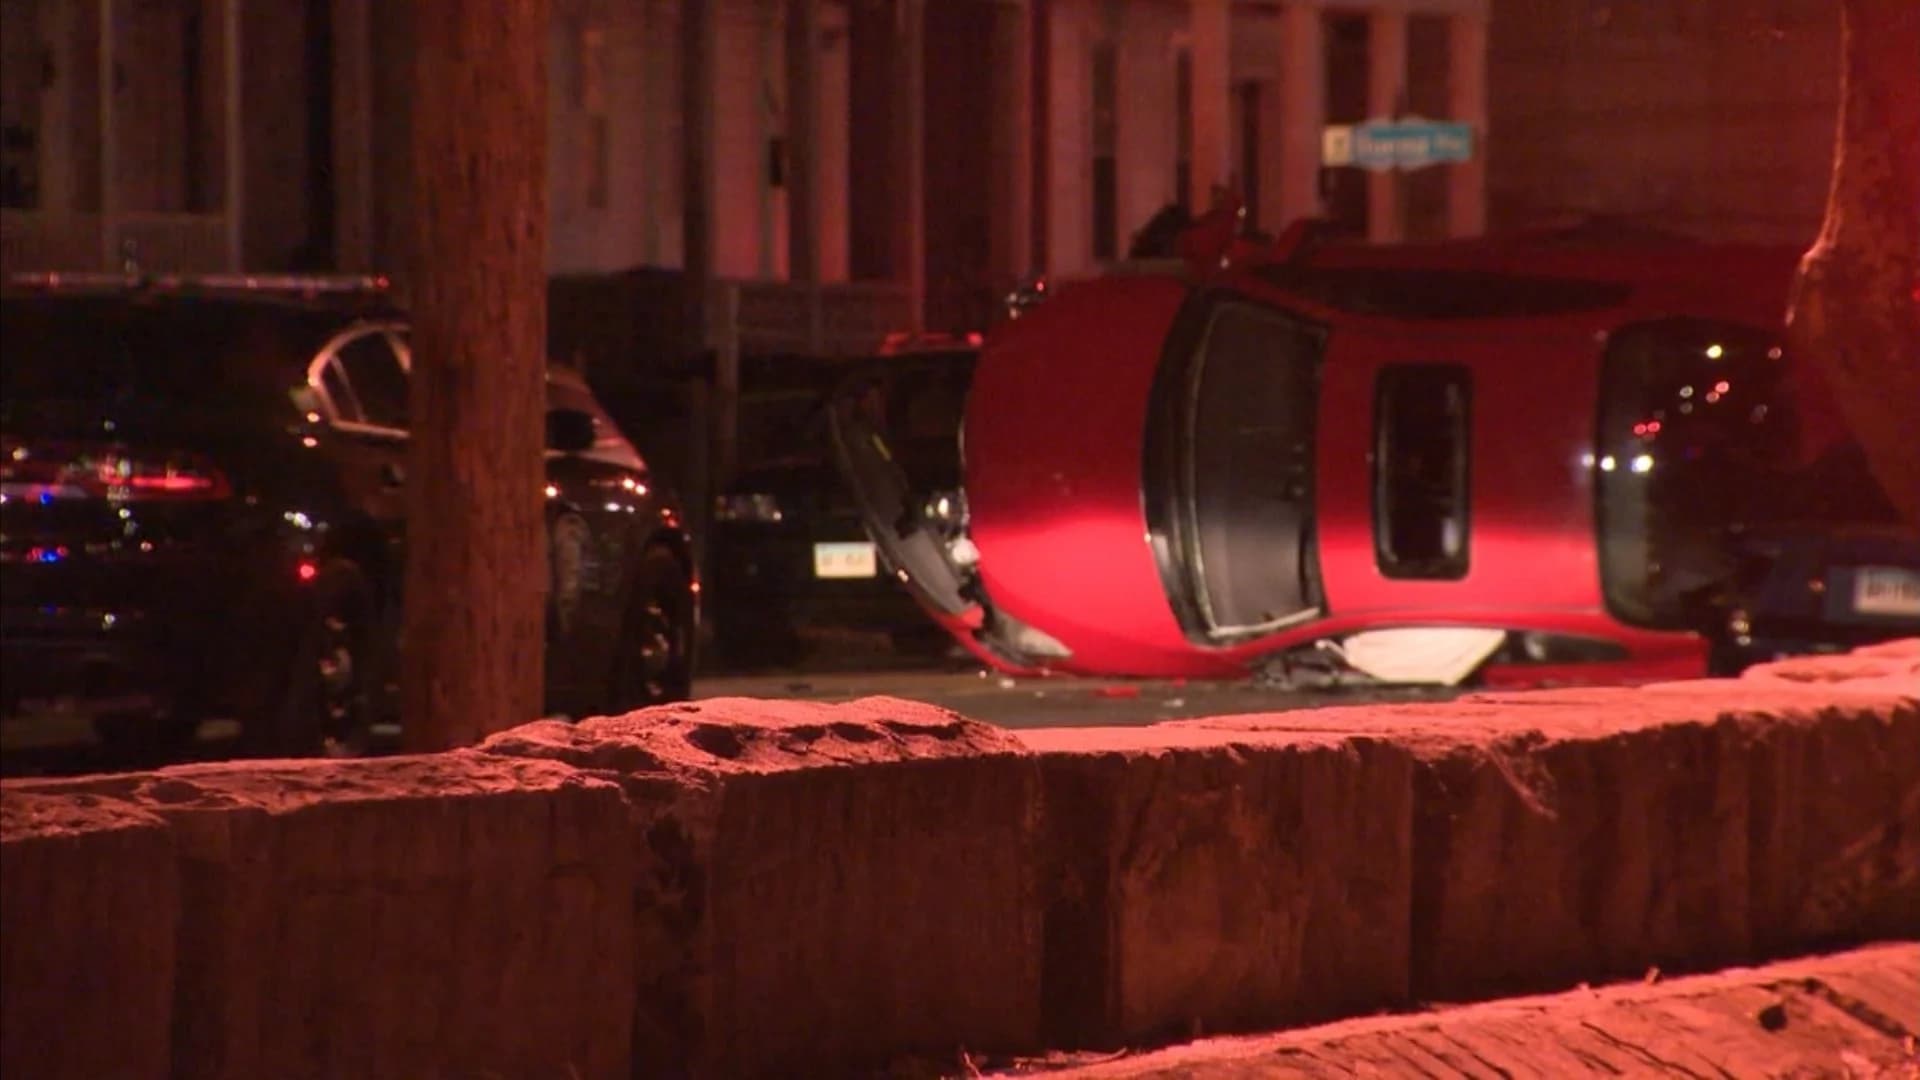 Police: Speeding caused 3-car accident in Bridgeport